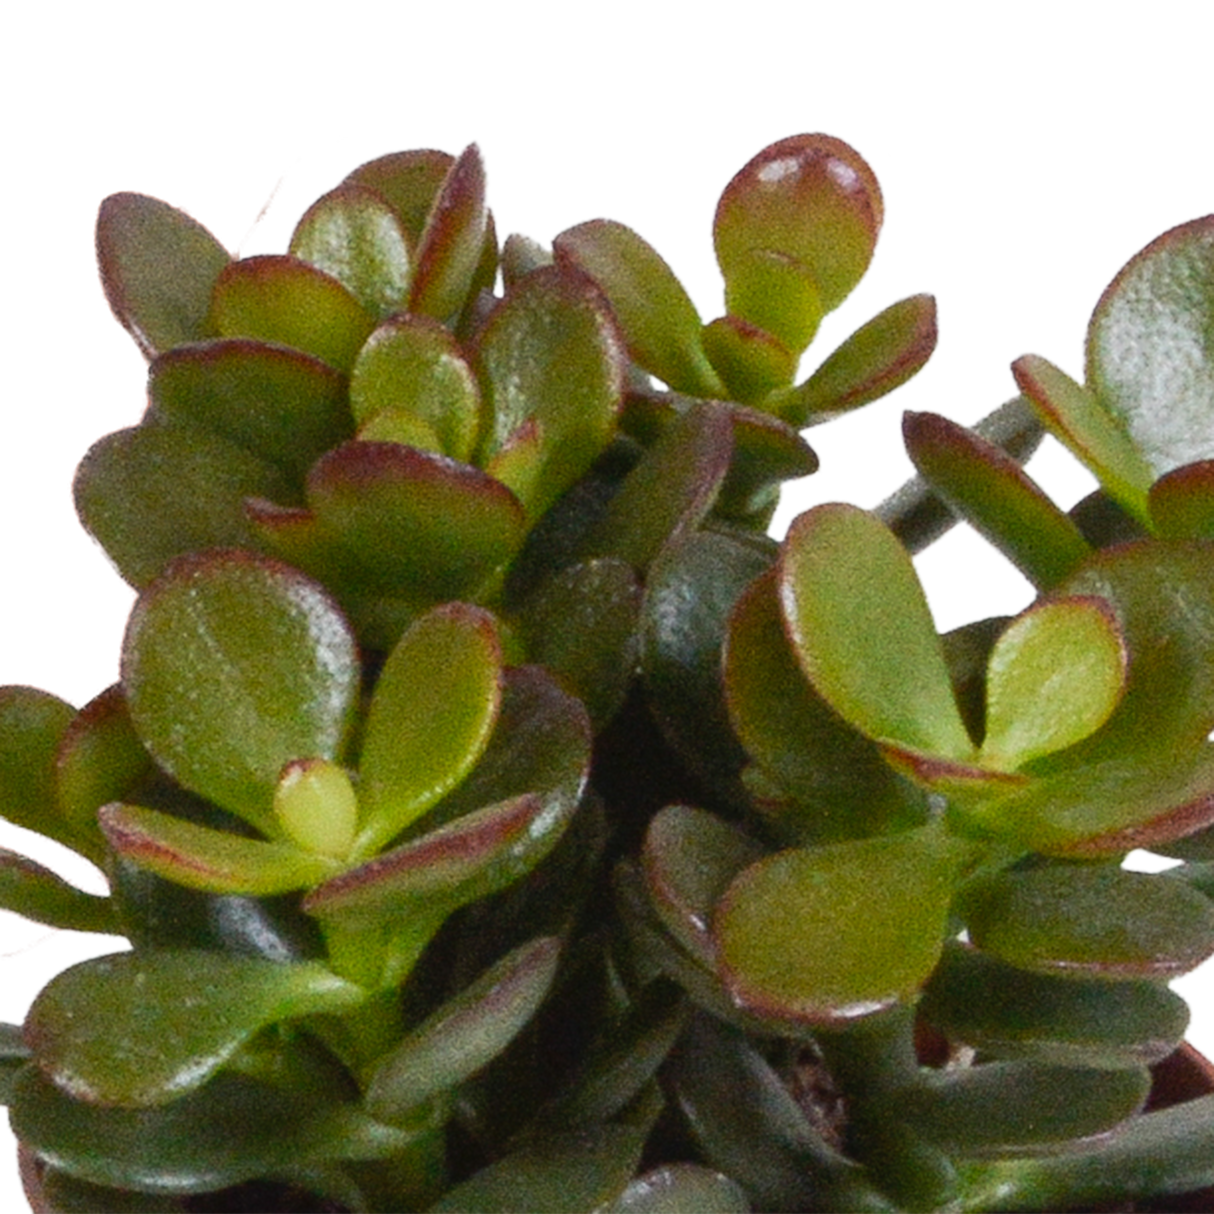 Scatola Crassula e le sue fioriere in terracotta - Set di 3 piante, h18cm